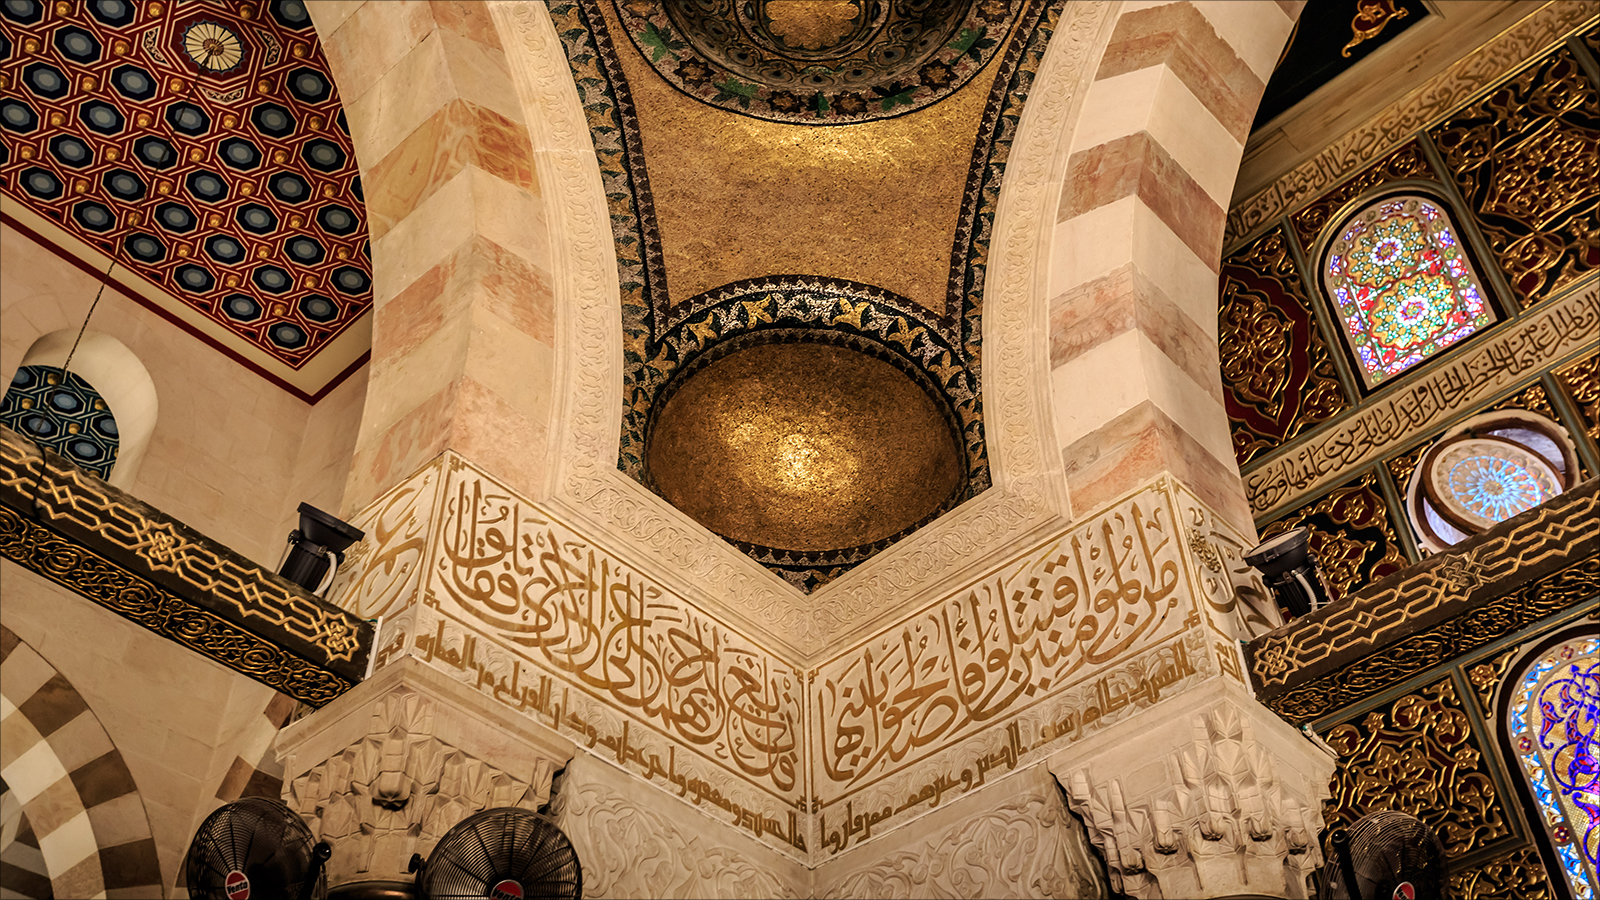 تجلَّى إبداع الفنانين المسلمين في مجالات مختلفة، مثل الخط العربي والرسم على الزجاج والسجاد والزخارف، لكن العمارة كان لها النصيب الأكبر من الإبداع في الفن الإسلامي